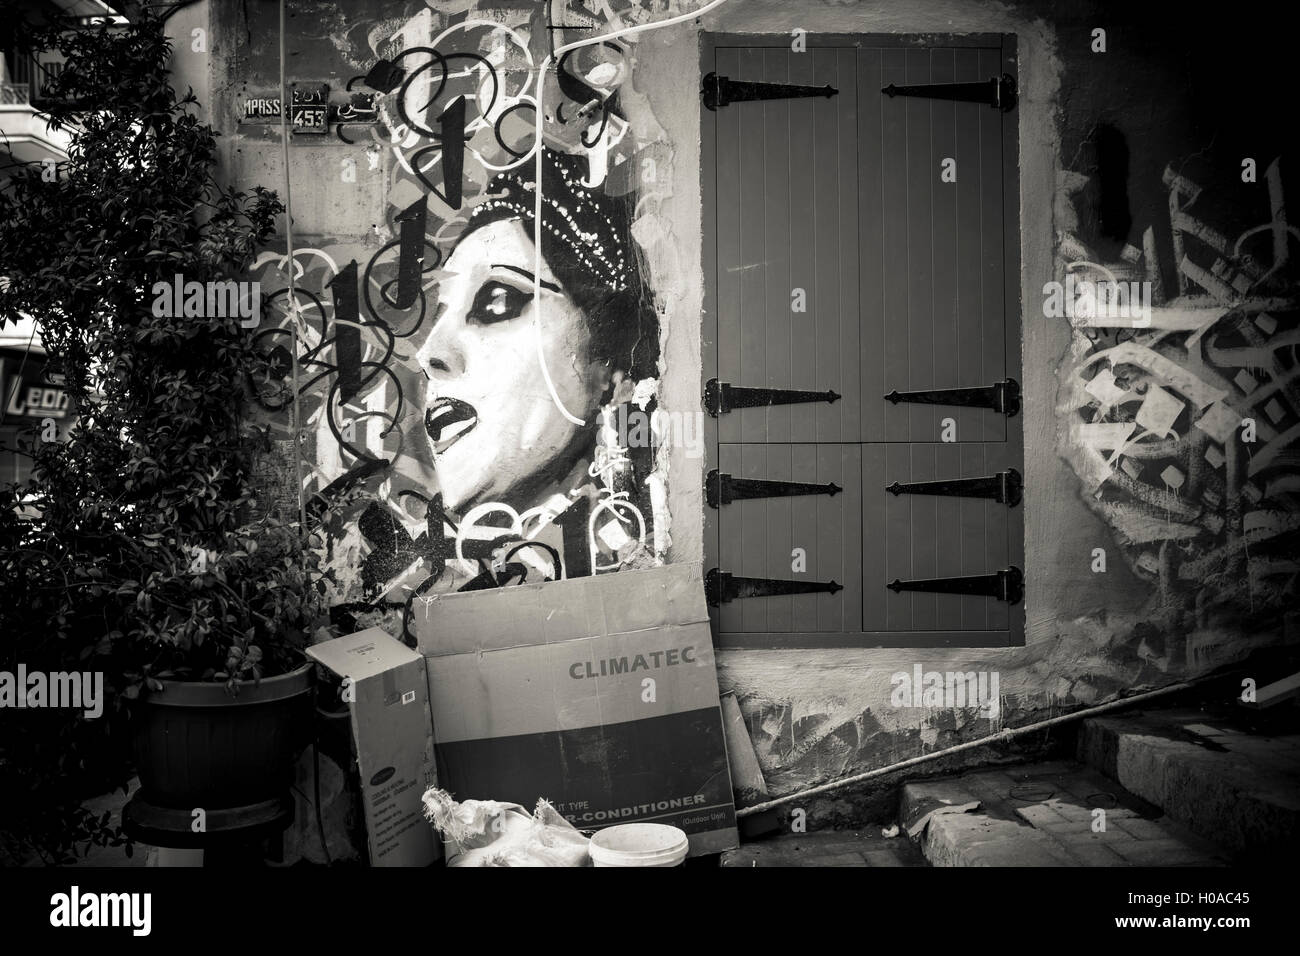 Les graffitis à Beyrouth - 01/08/2015 - Liban / Beyrouth - Gemayze, Beyrouth, août 2015. Fayruz par Yazan Halwani comme il est maintenant - Bilal Tarabey / Le Pictorium Banque D'Images